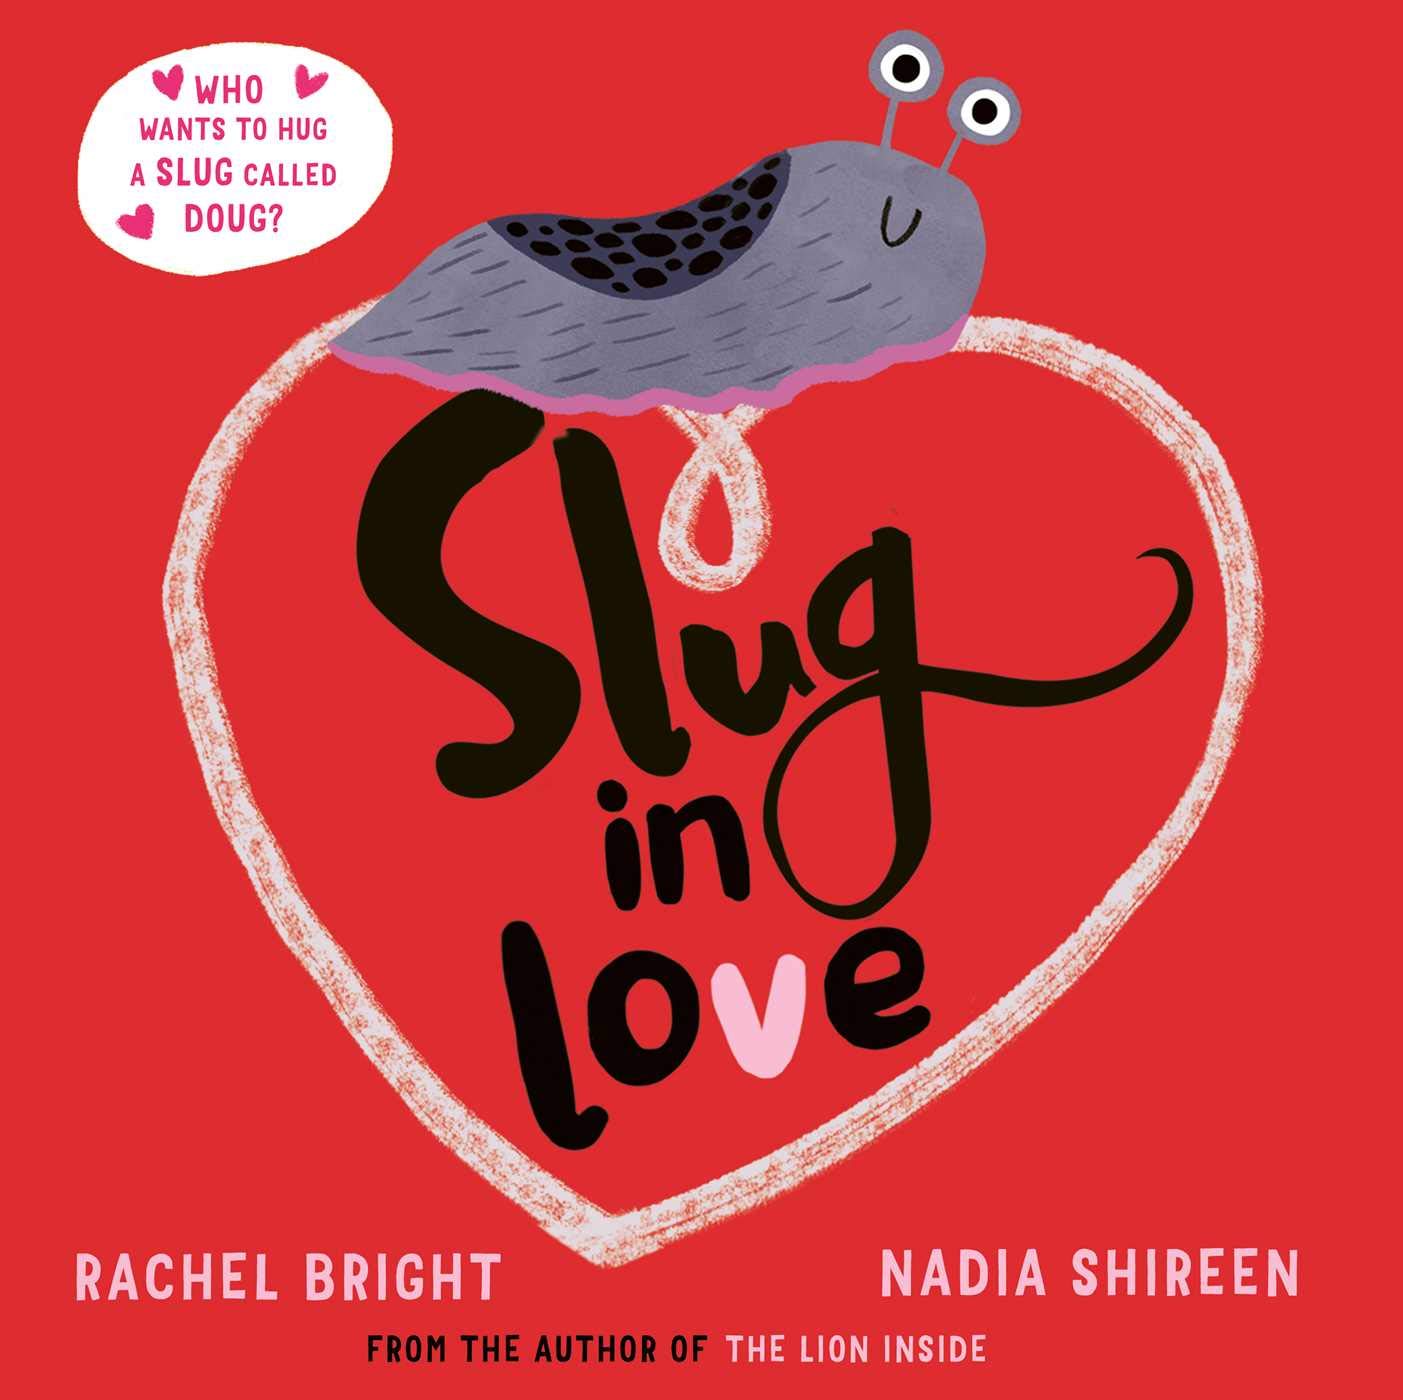 Slug in Love : a funny, adorable hug of a book